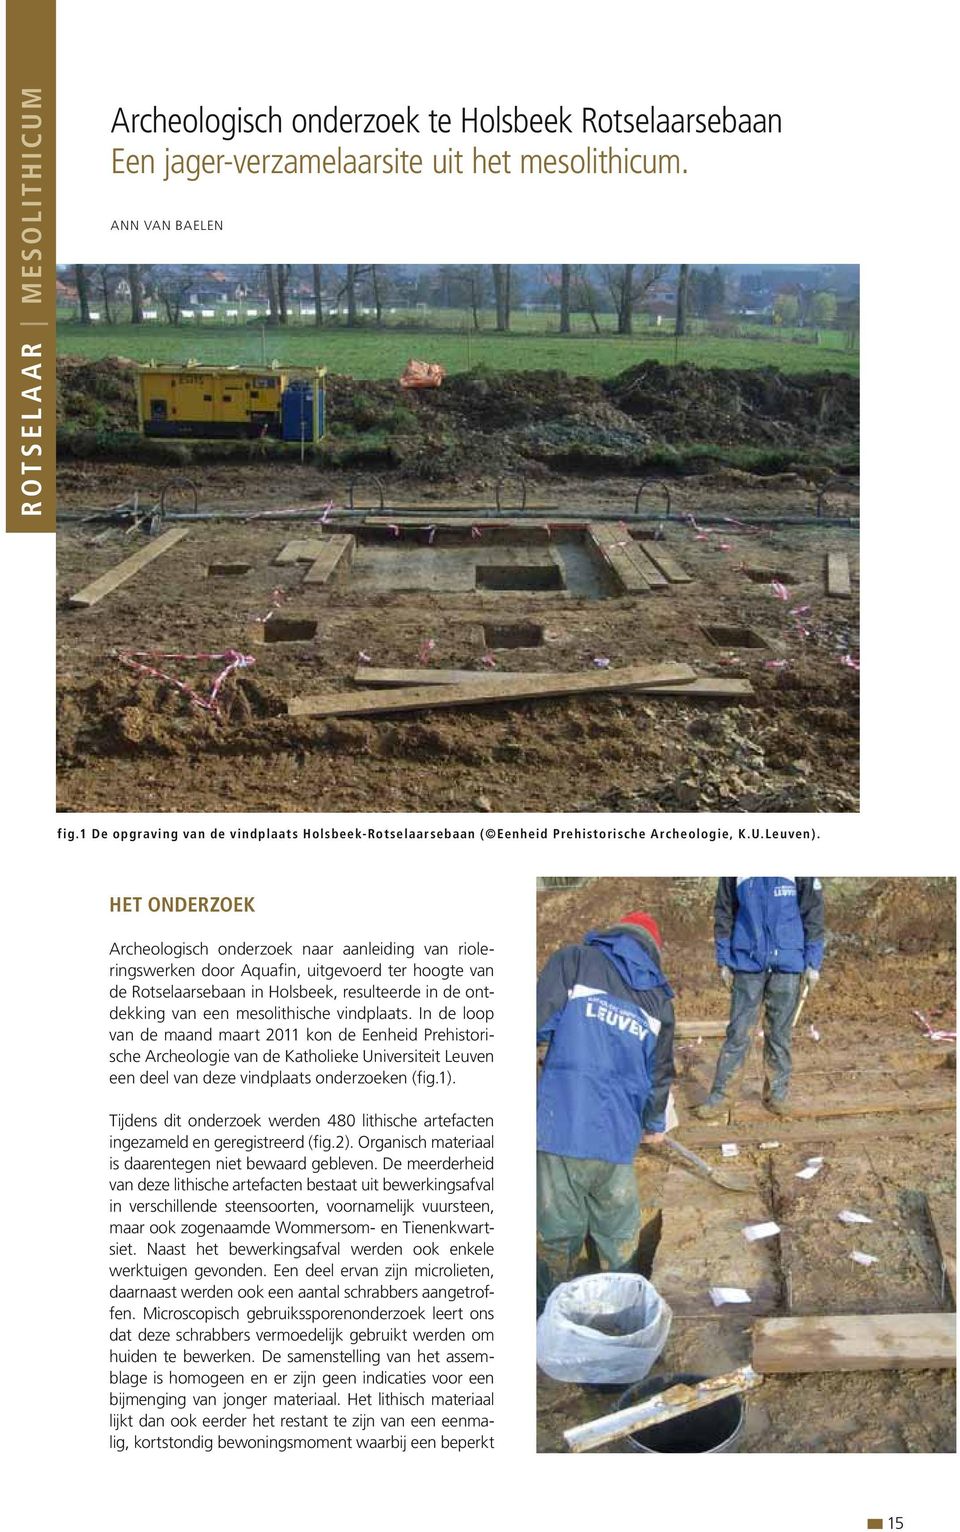 HET ONDERZOEK Archeologisch onderzoek naar aanleiding van rioleringswerken door Aquafin, uitgevoerd ter hoogte van de Rotselaarsebaan in Holsbeek, resulteerde in de ontdekking van een mesolithische